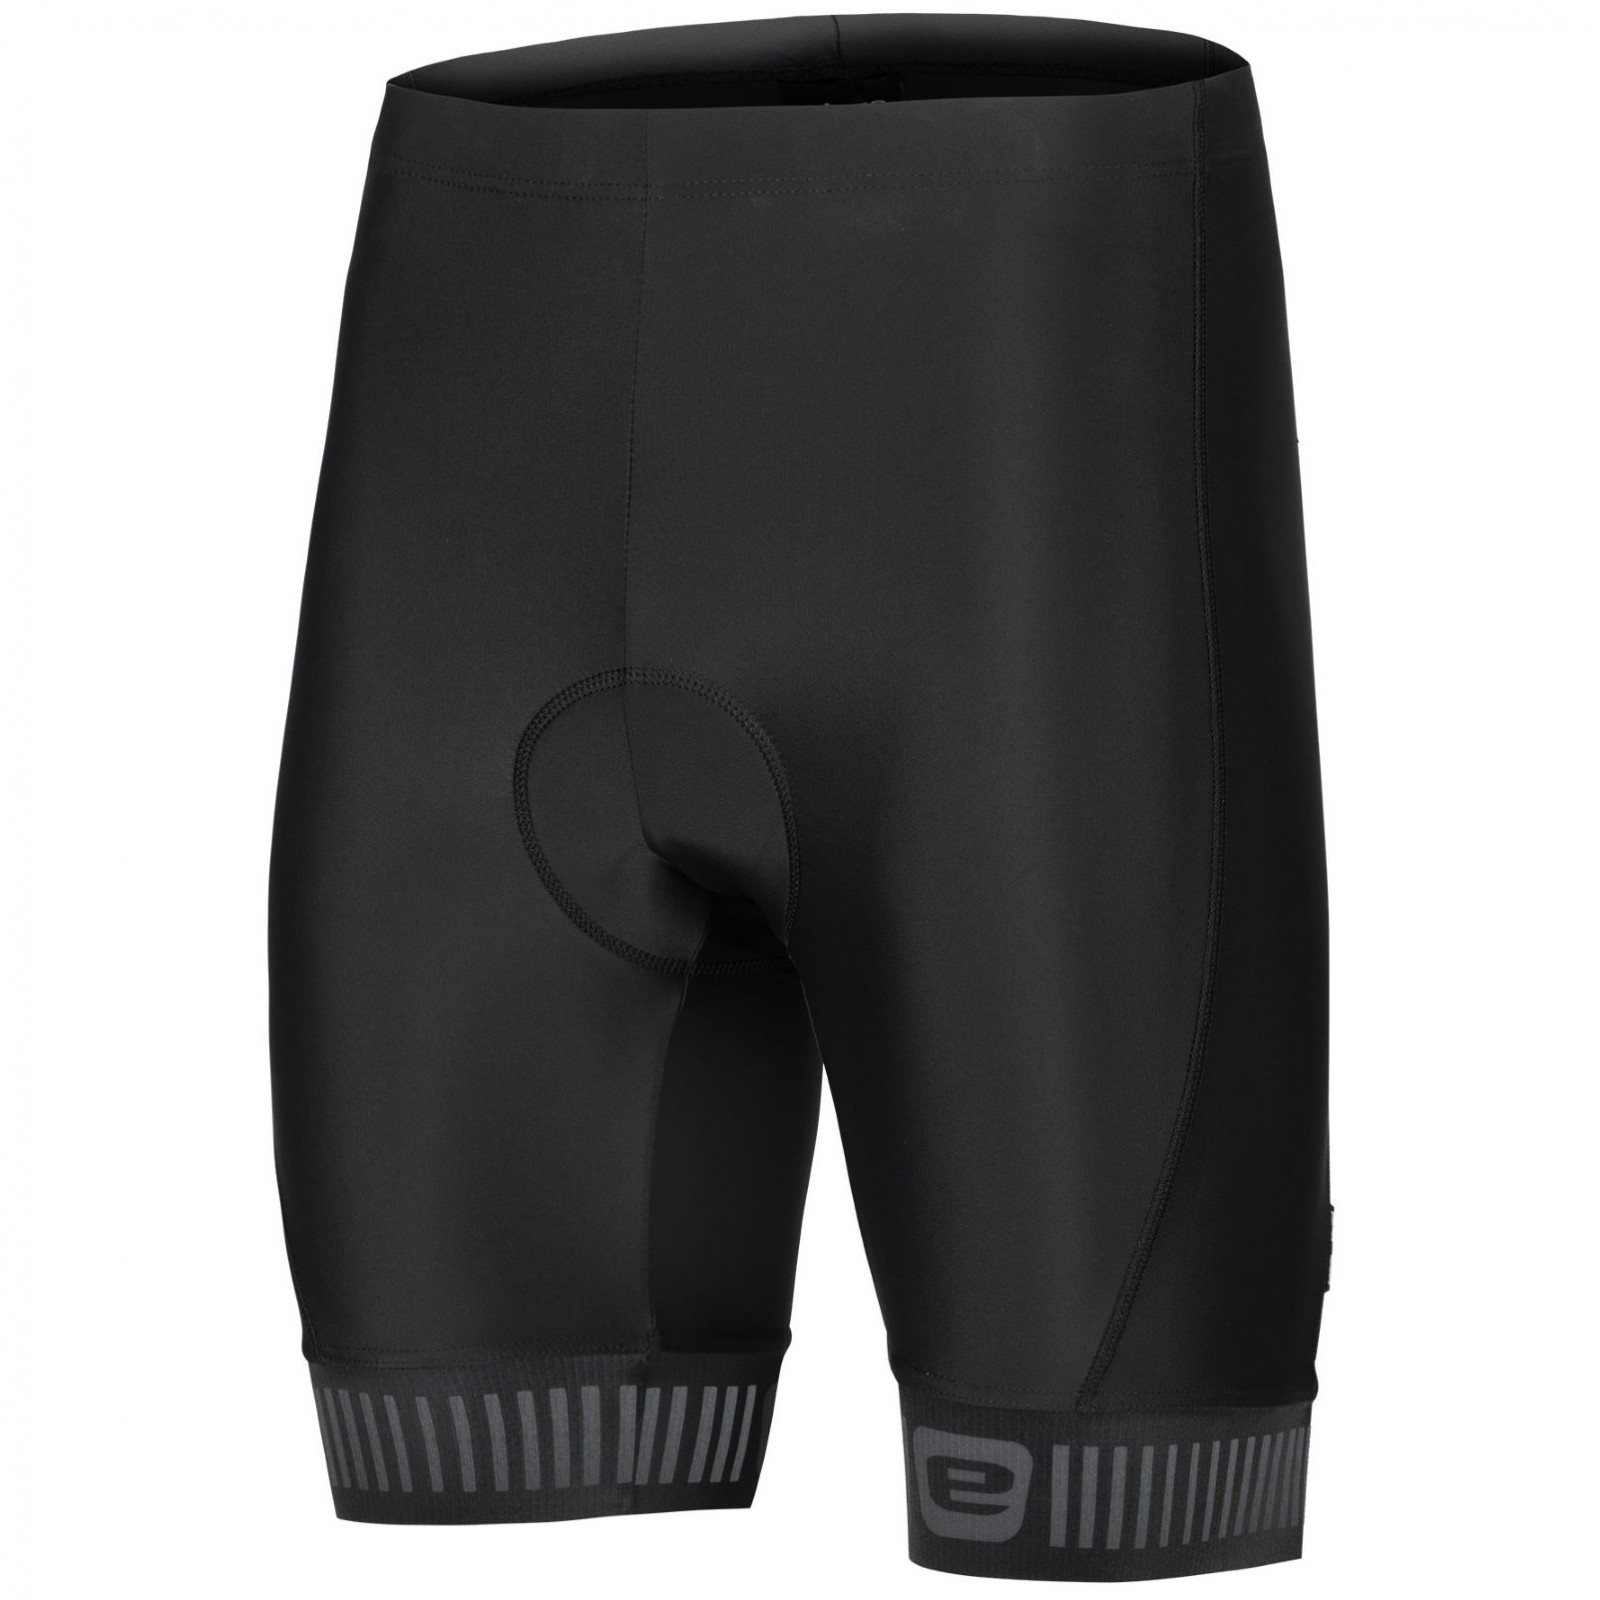 Pánské cyklistické kalhoty Etape Elite Velikost: M / Barva: černá/šedá